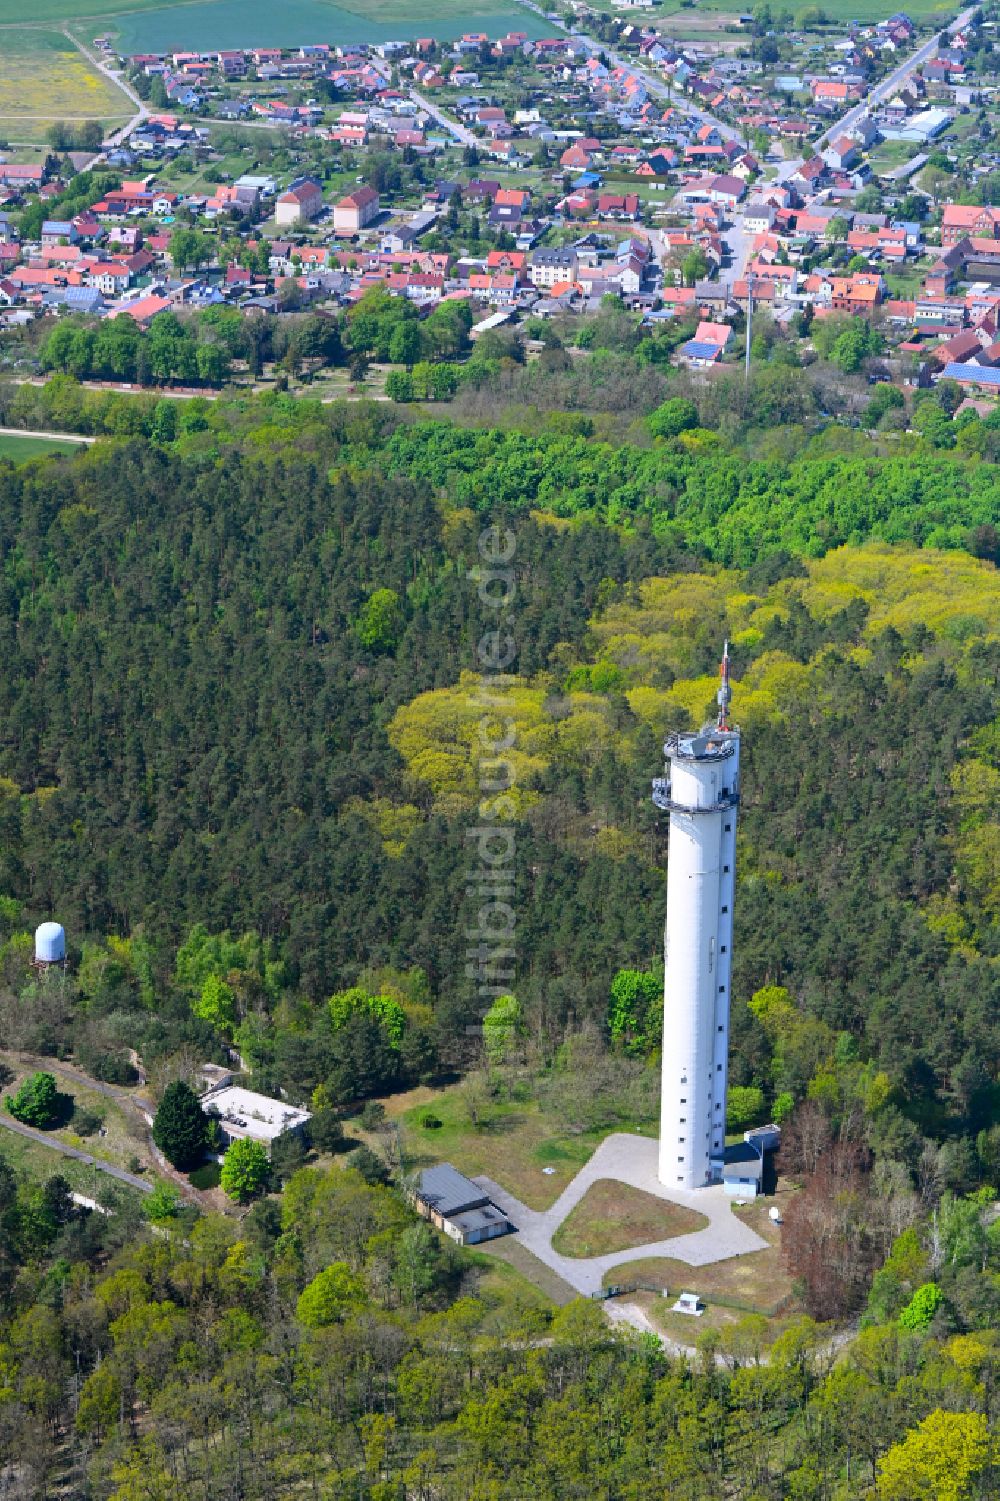 Luftaufnahme Rhinow - Fernmeldeturm und Fernsehturm in Rhinow im Bundesland Brandenburg, Deutschland